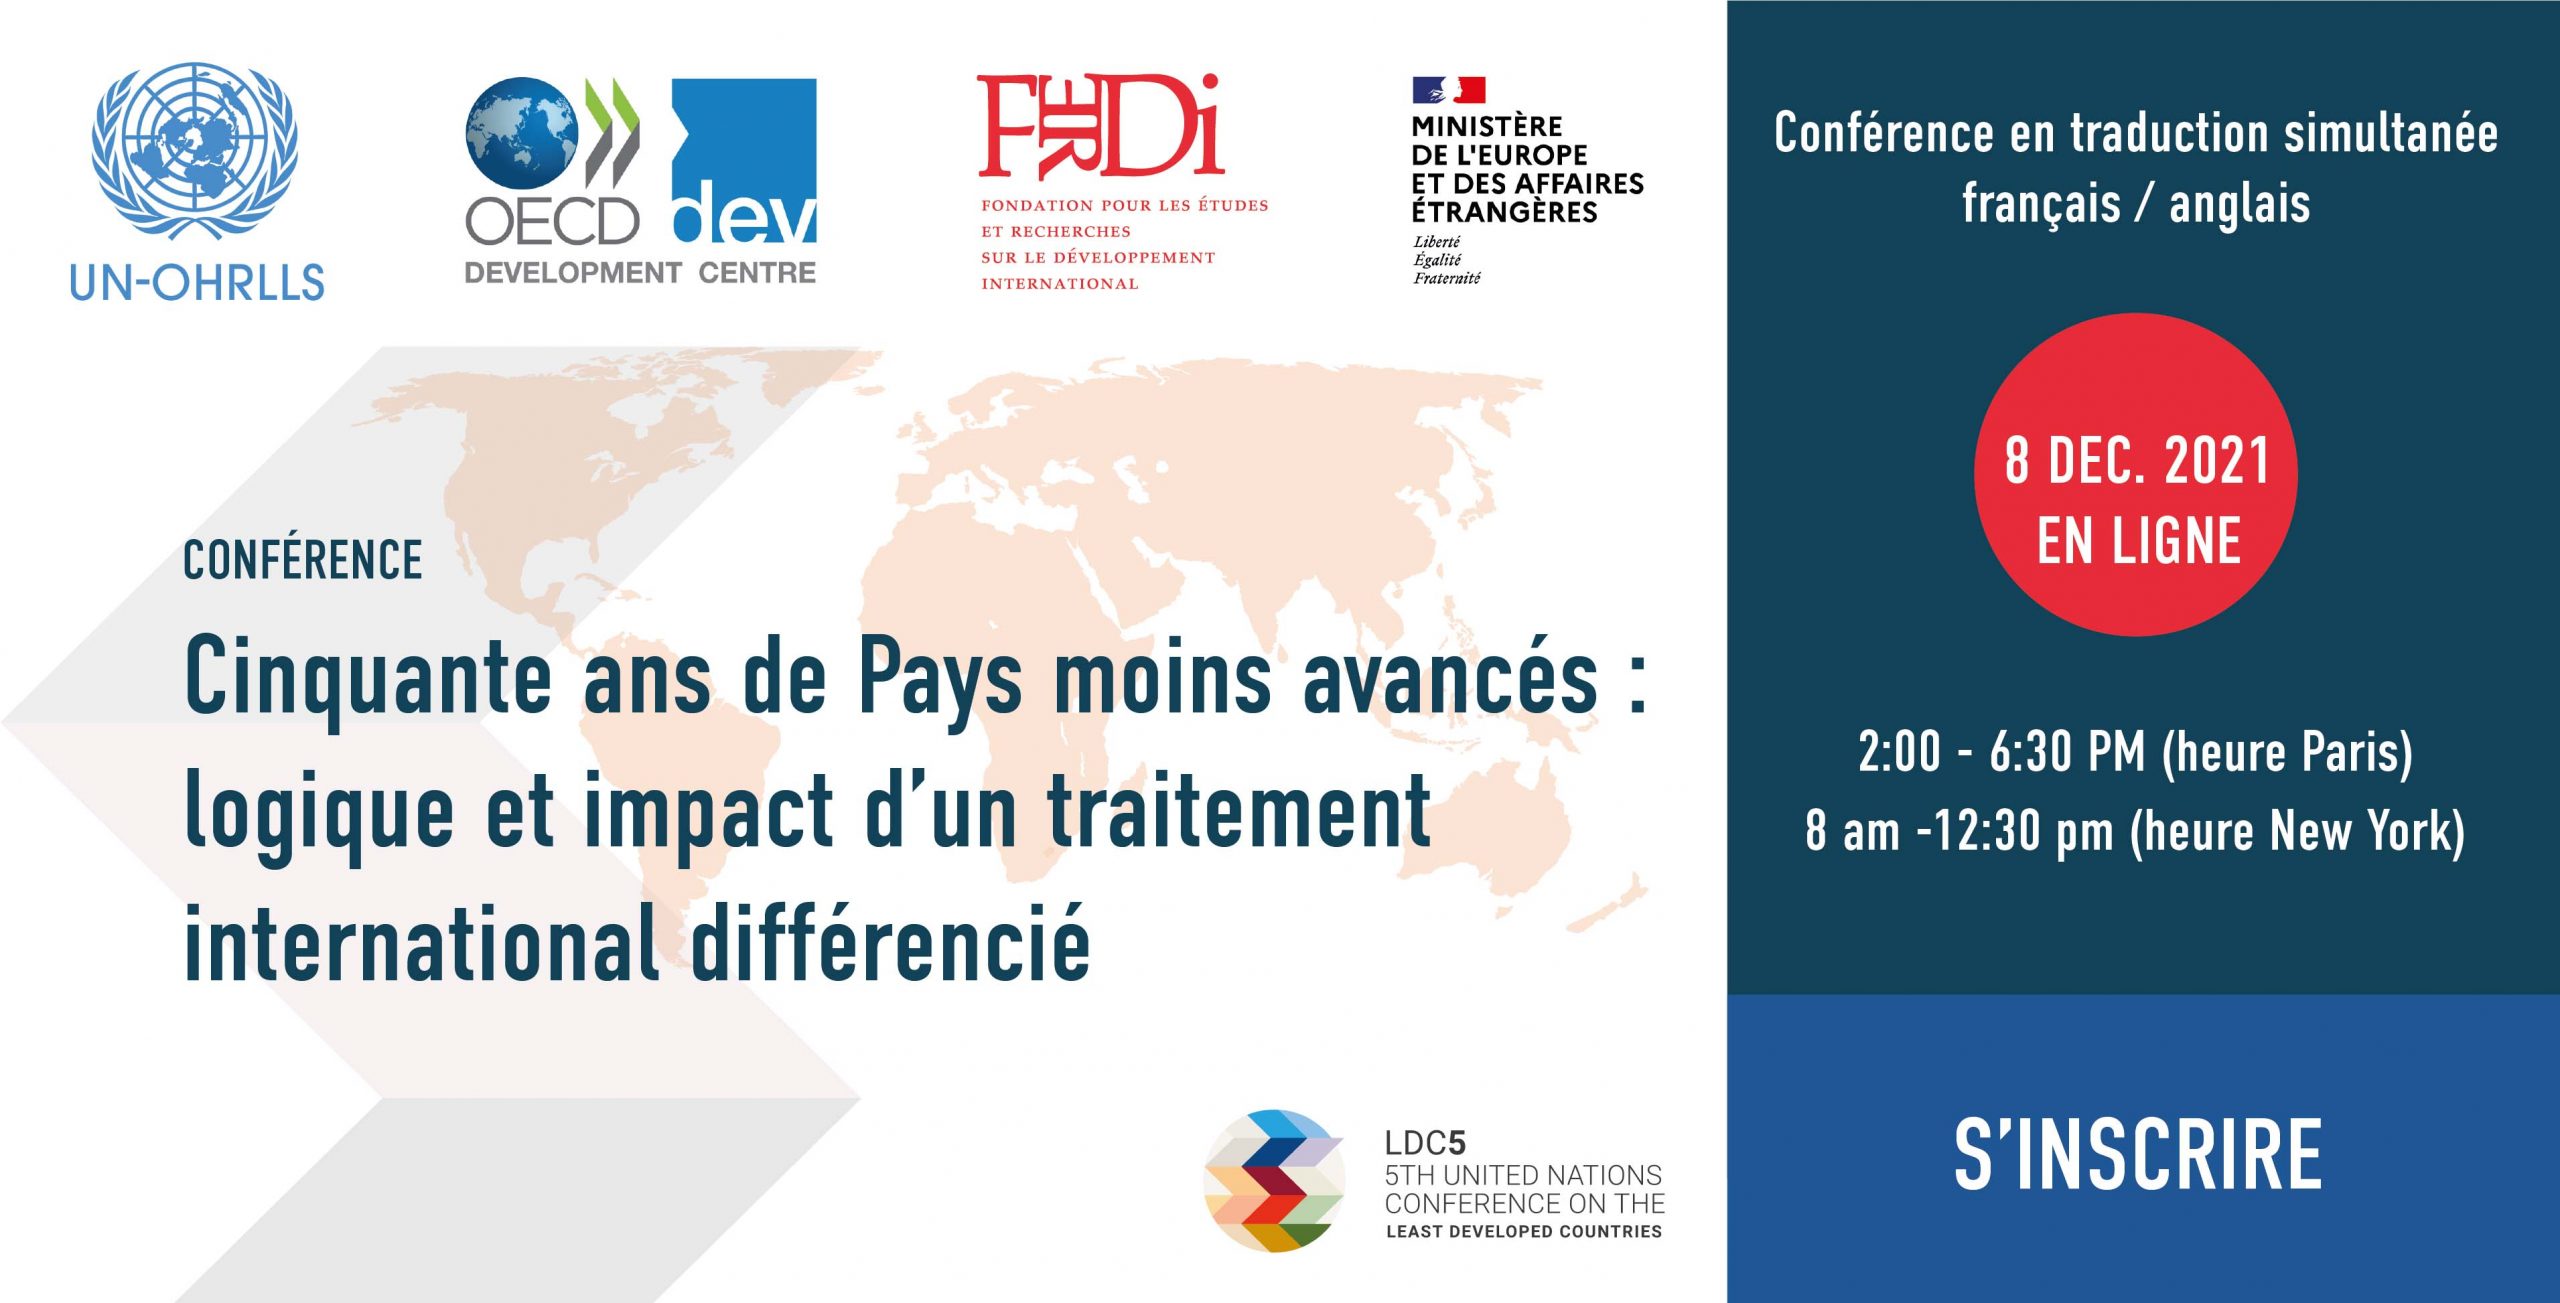 Conférence en ligne Ferdi : Cinquante ans de Pays moins avancés : logique et impact d’un traitement international différencié